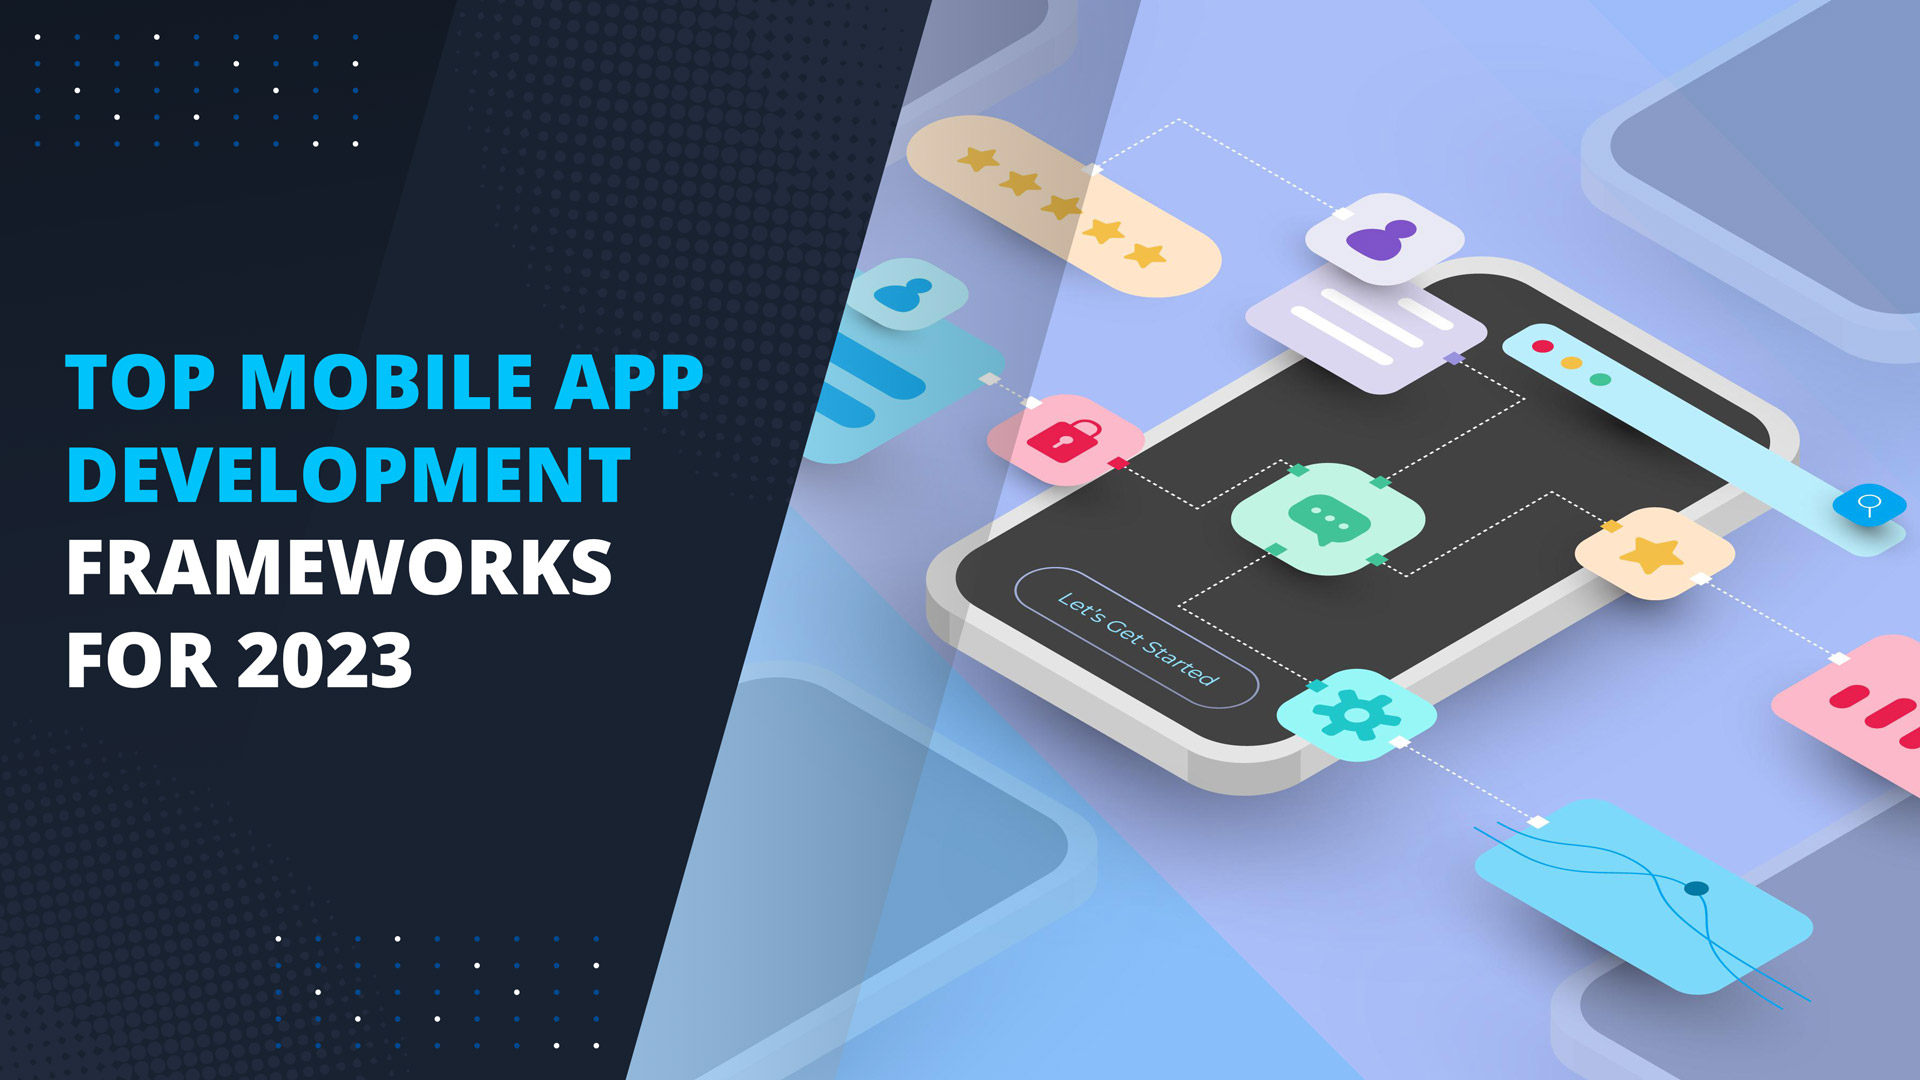 Top Mobile App Development Frameworks for 2023